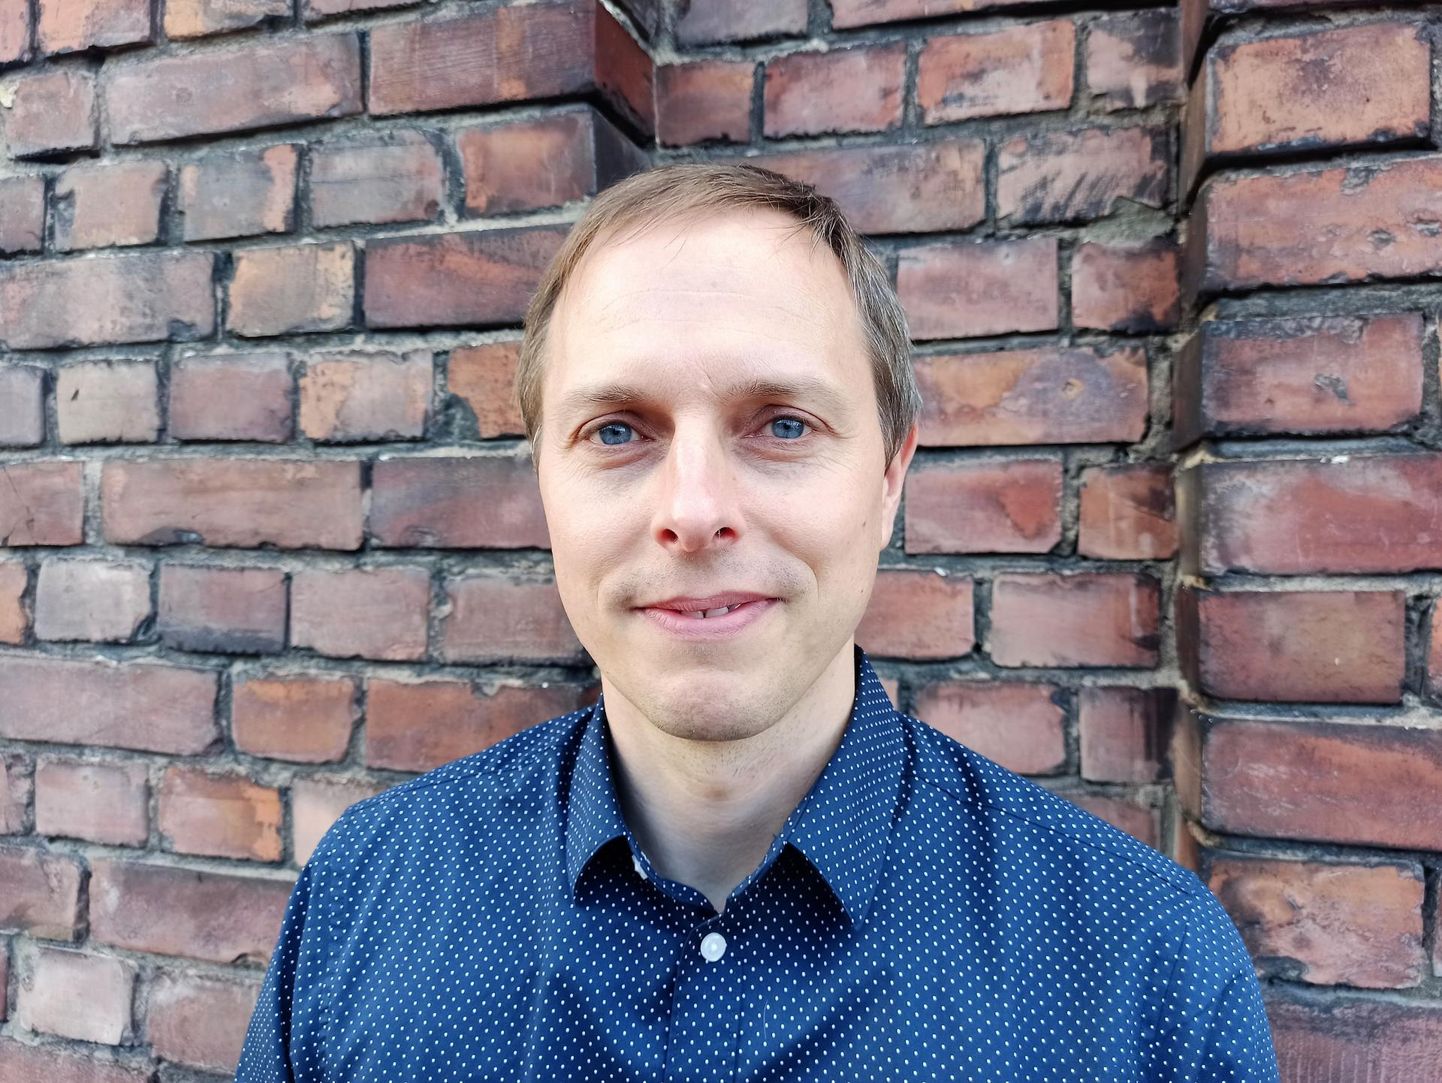 Stockholmi Keskkonnainstituudi Tallinna keskuse kliima- ja energiaprogrammi juht Andreas Hoy.